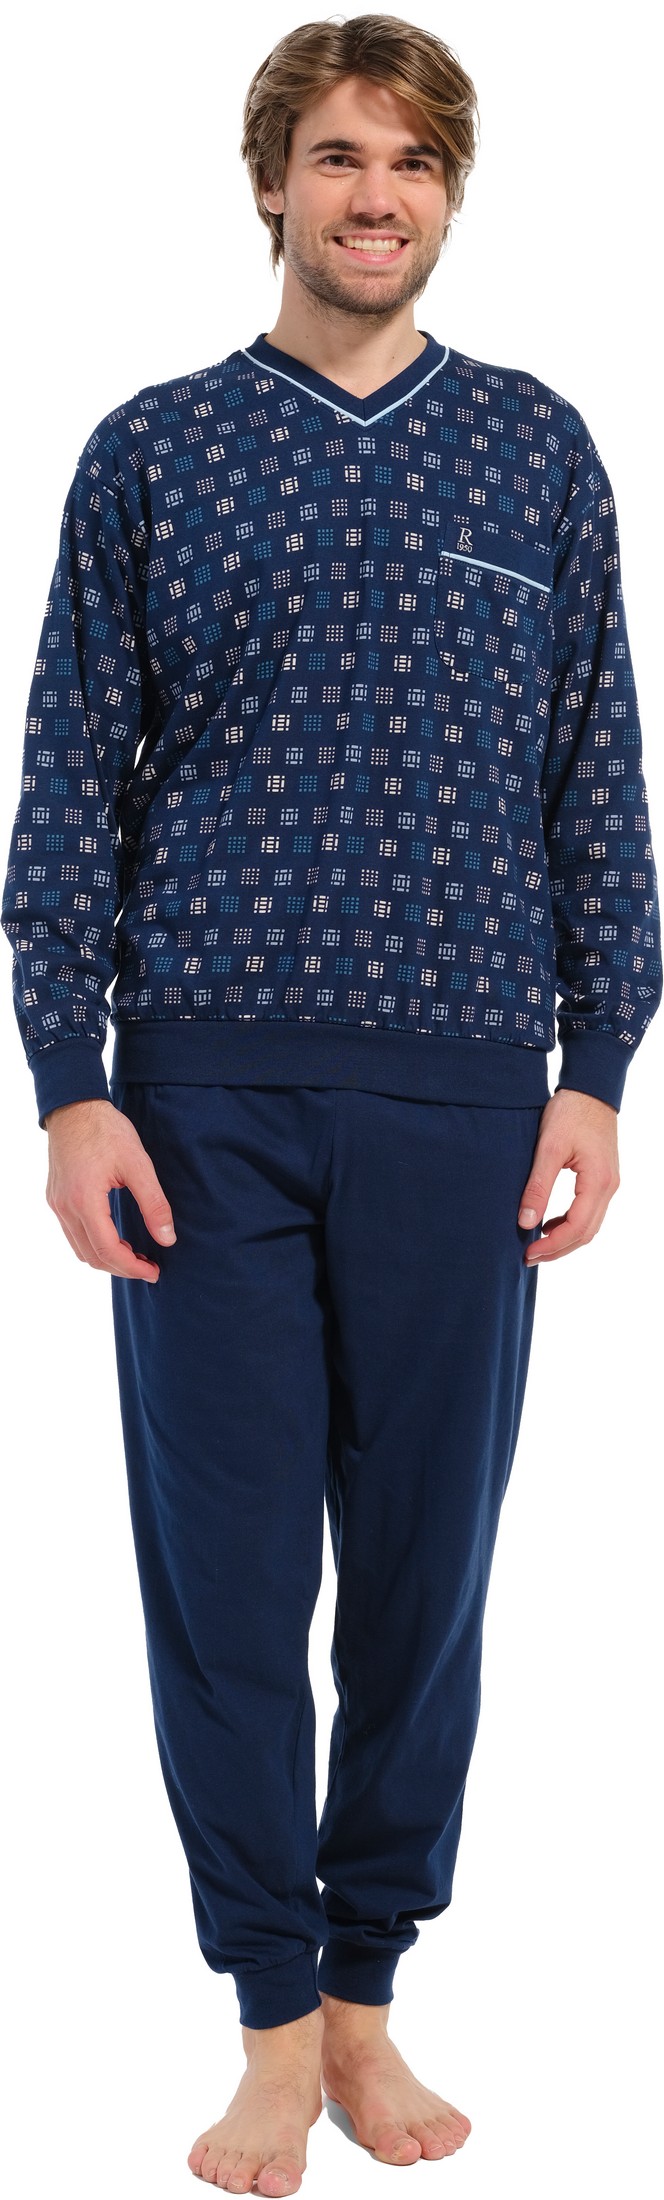 Robson tricot heren pyjama 27232-716-2 - Blauw - L/52